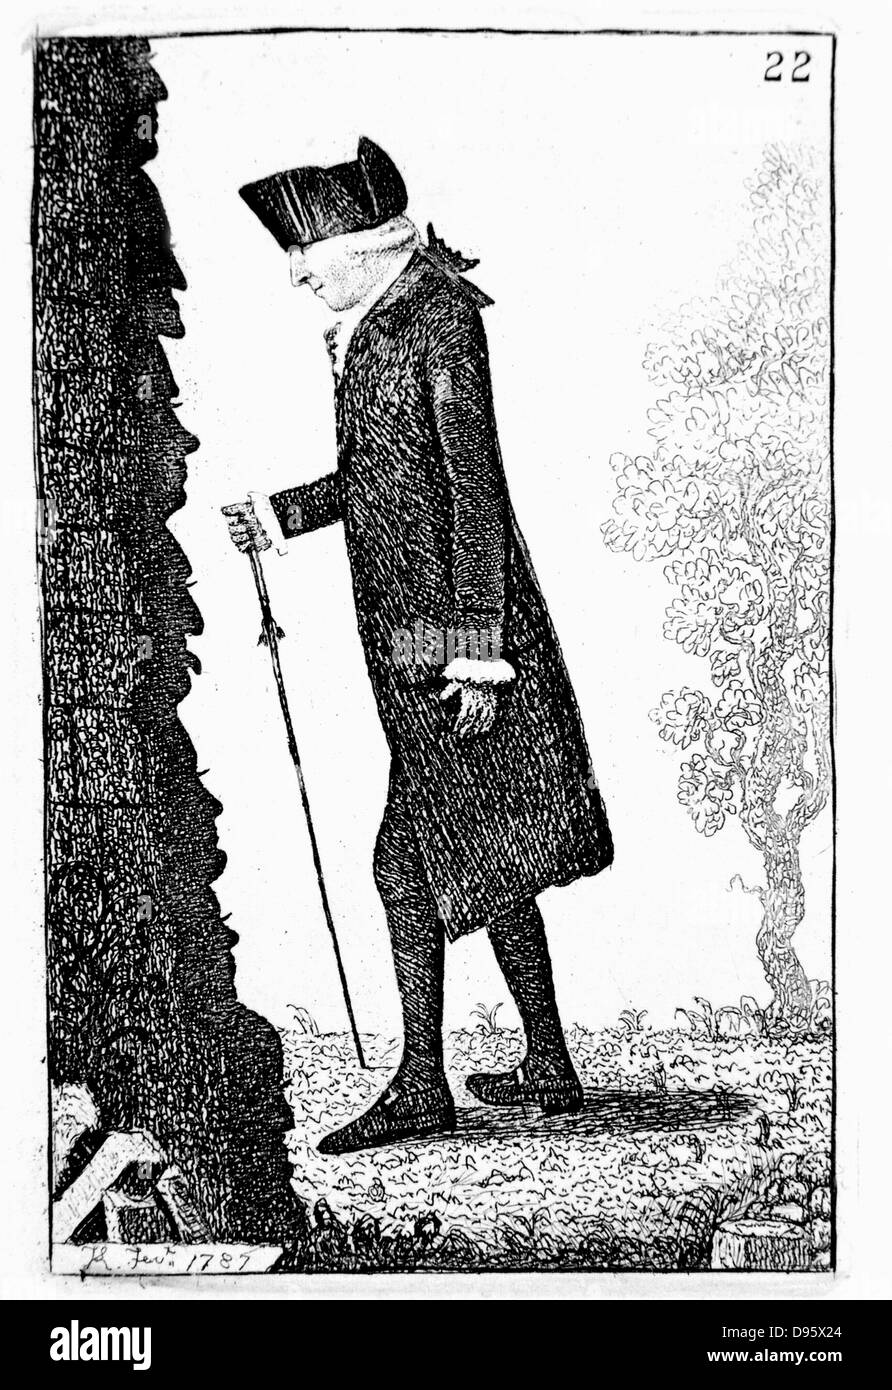 Joseph Schwarz (1728-99) Schottischer Chemiker, Einen Spaziergang machen. Theorie des "latente Wärme": Pneumatische Chemie. Schwarz 1787. Radierung von John Kay. Stockfoto